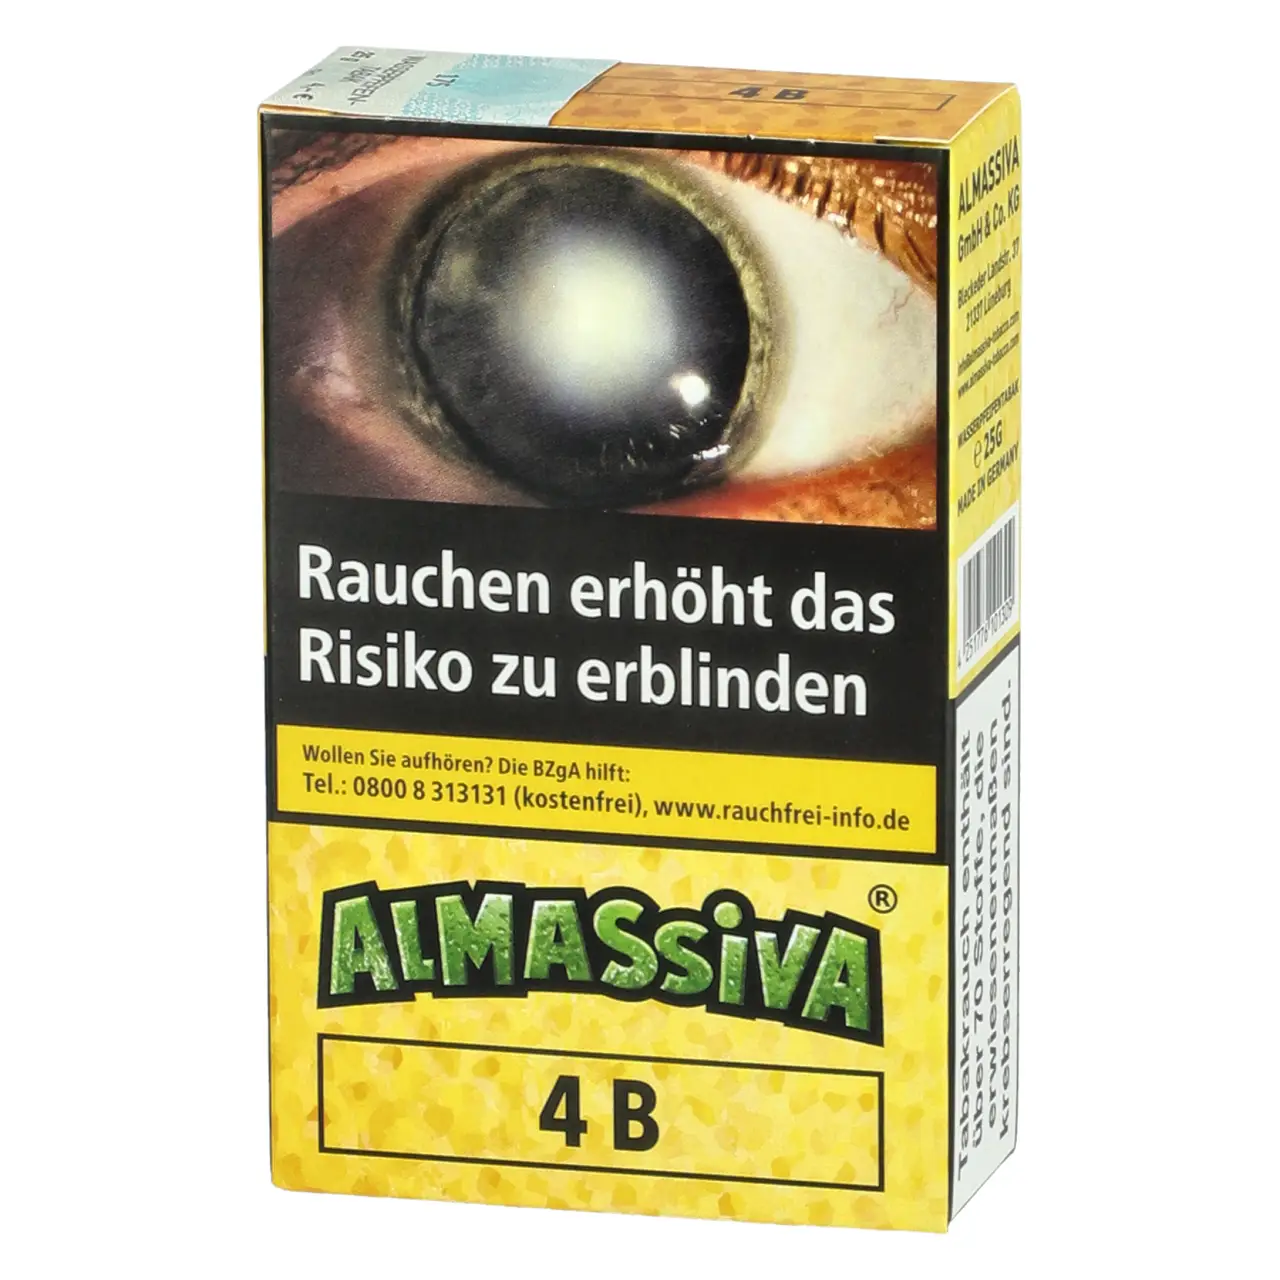 Almassiva Shisha Tabak 4B - Zitrone Limette - 25g